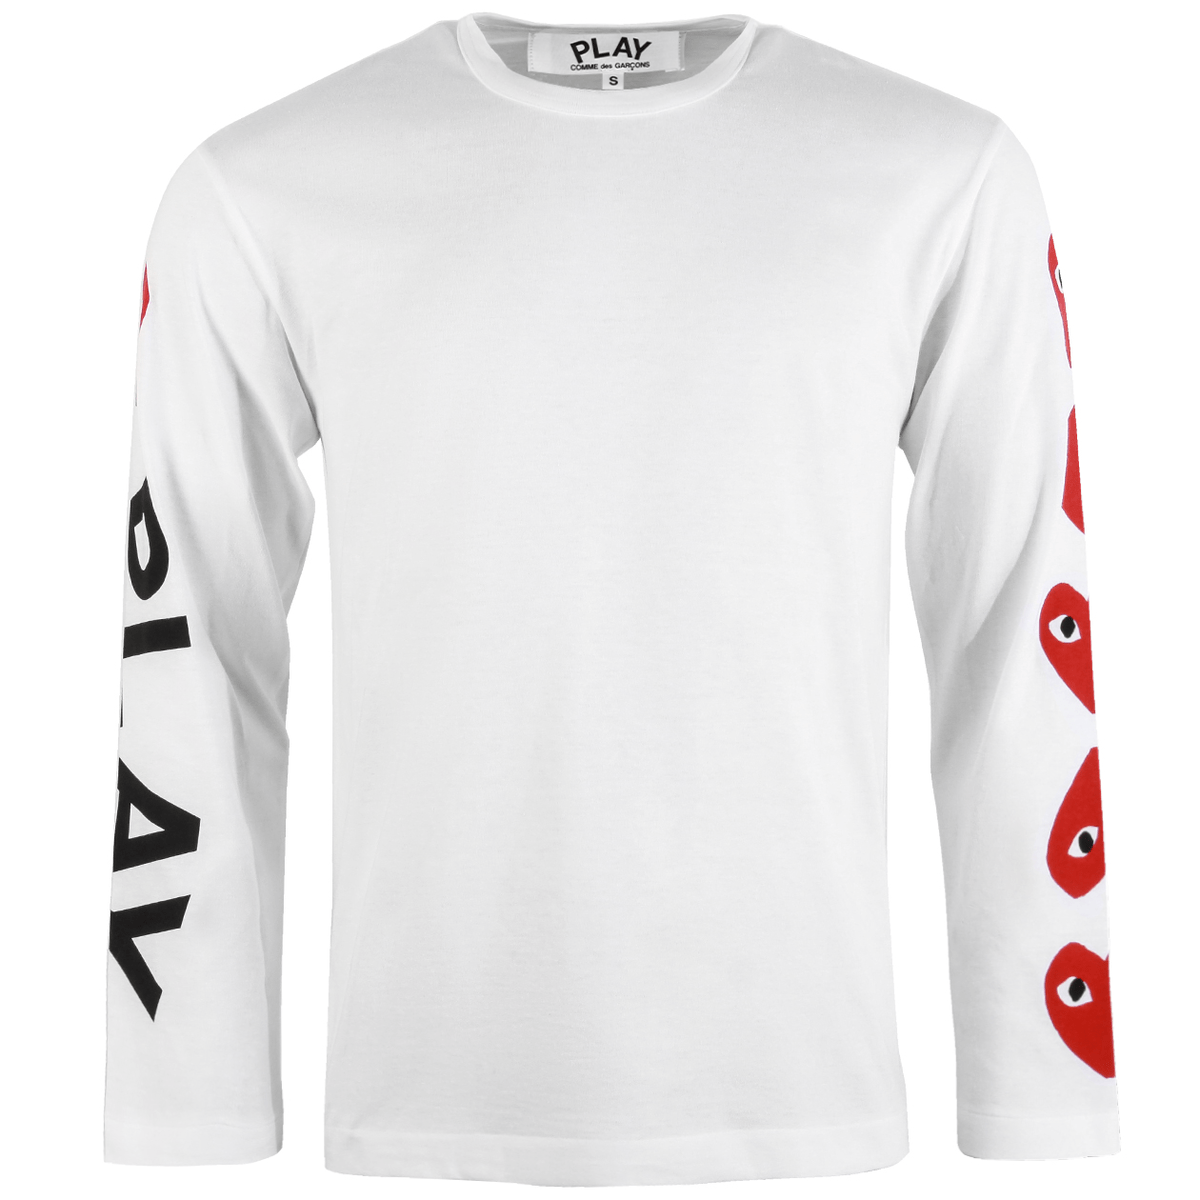 T262 Multi-heart Sleeve T-shirt S White